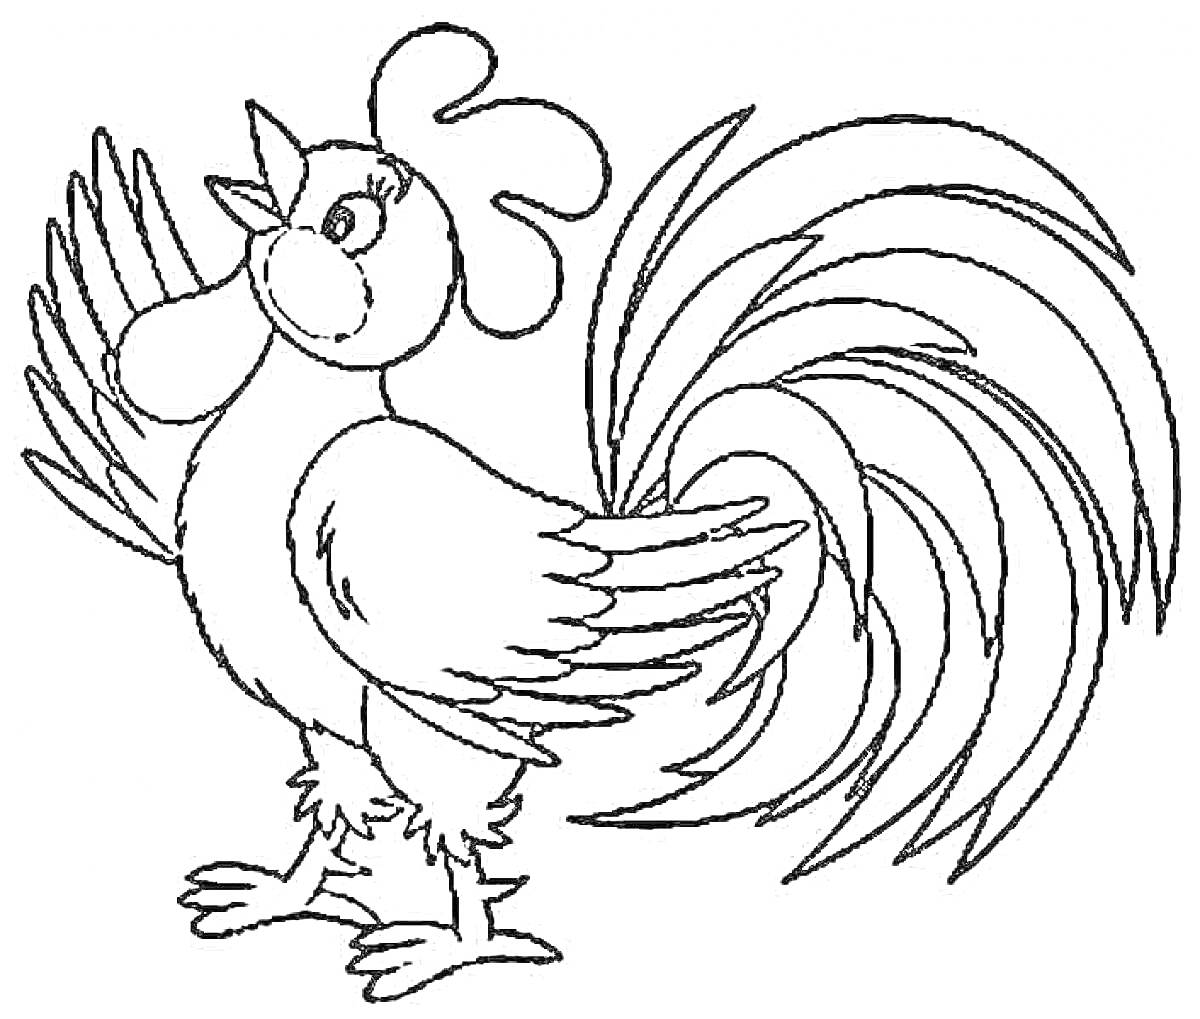 Раскраска Раскраска с изображением радостного петуха с пушистым хвостом и расправленными крыльями